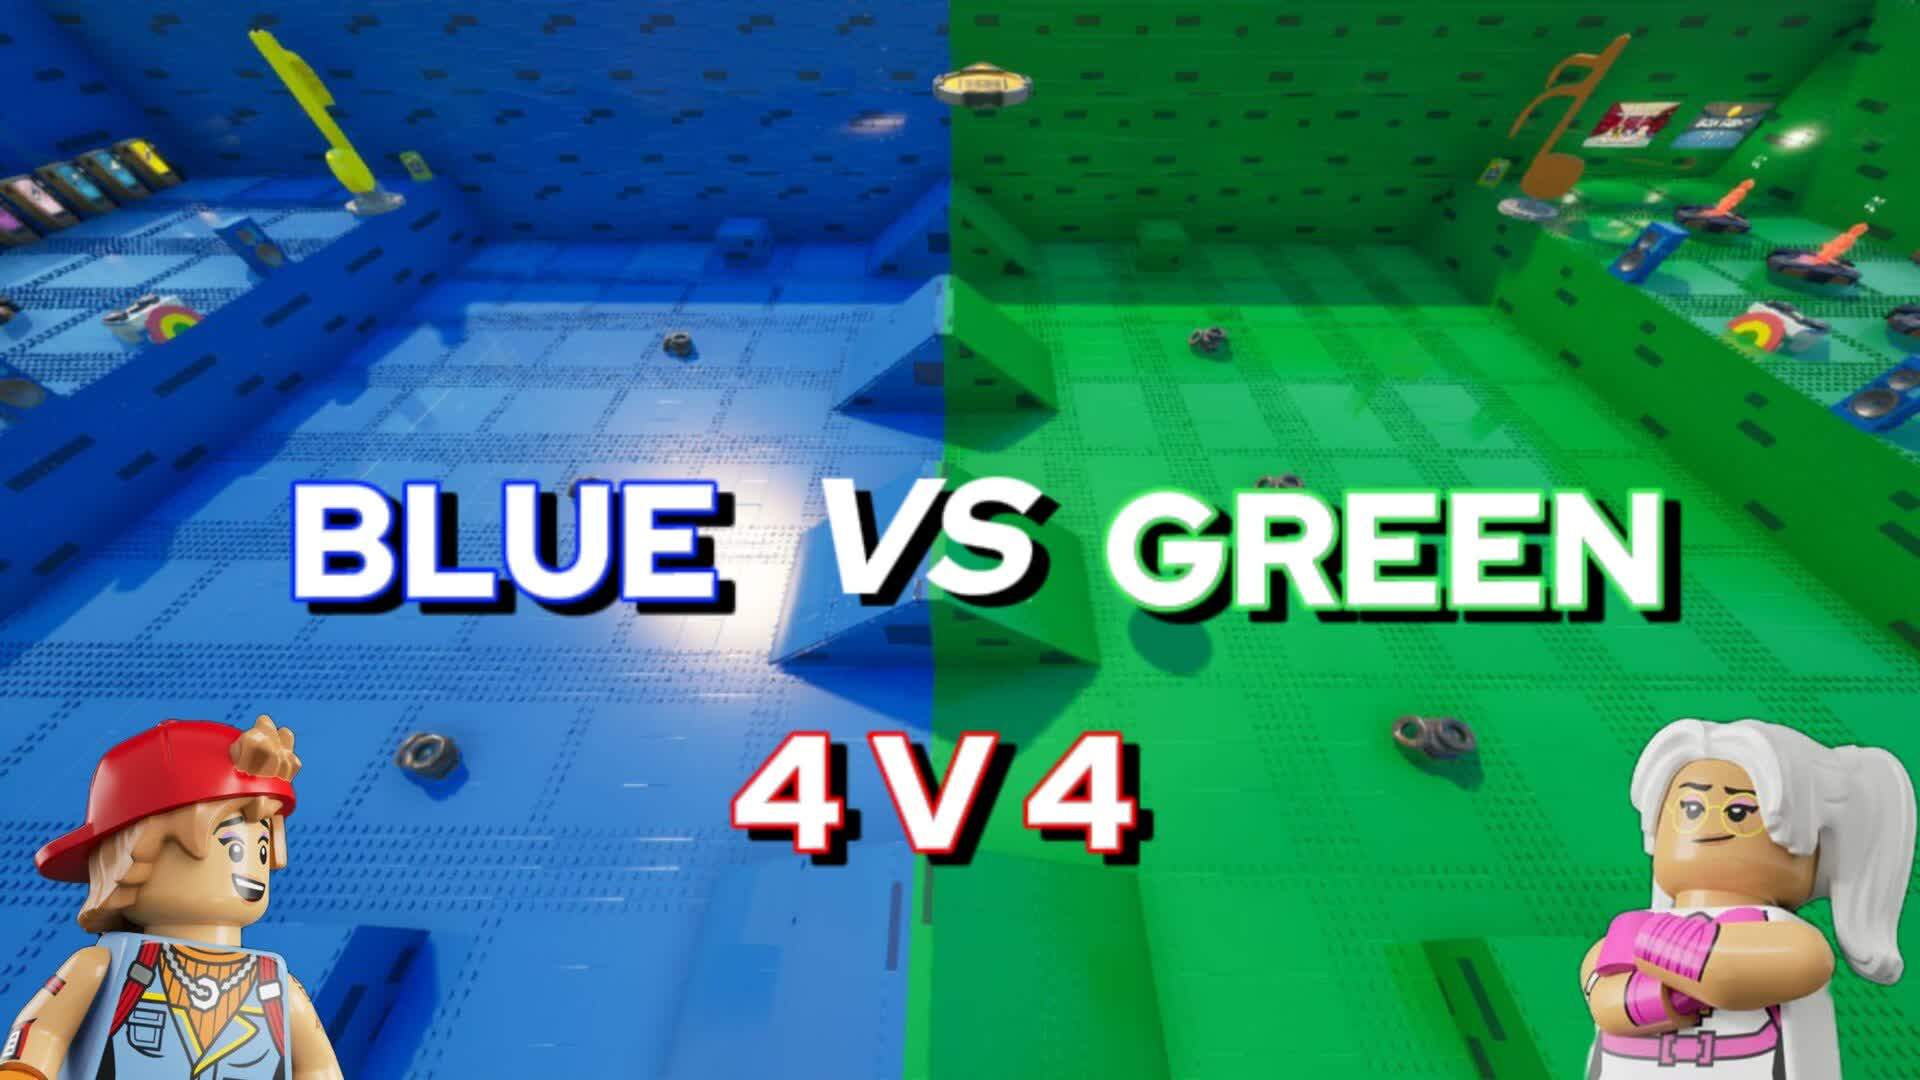 BLUE VS GREEN 4V4